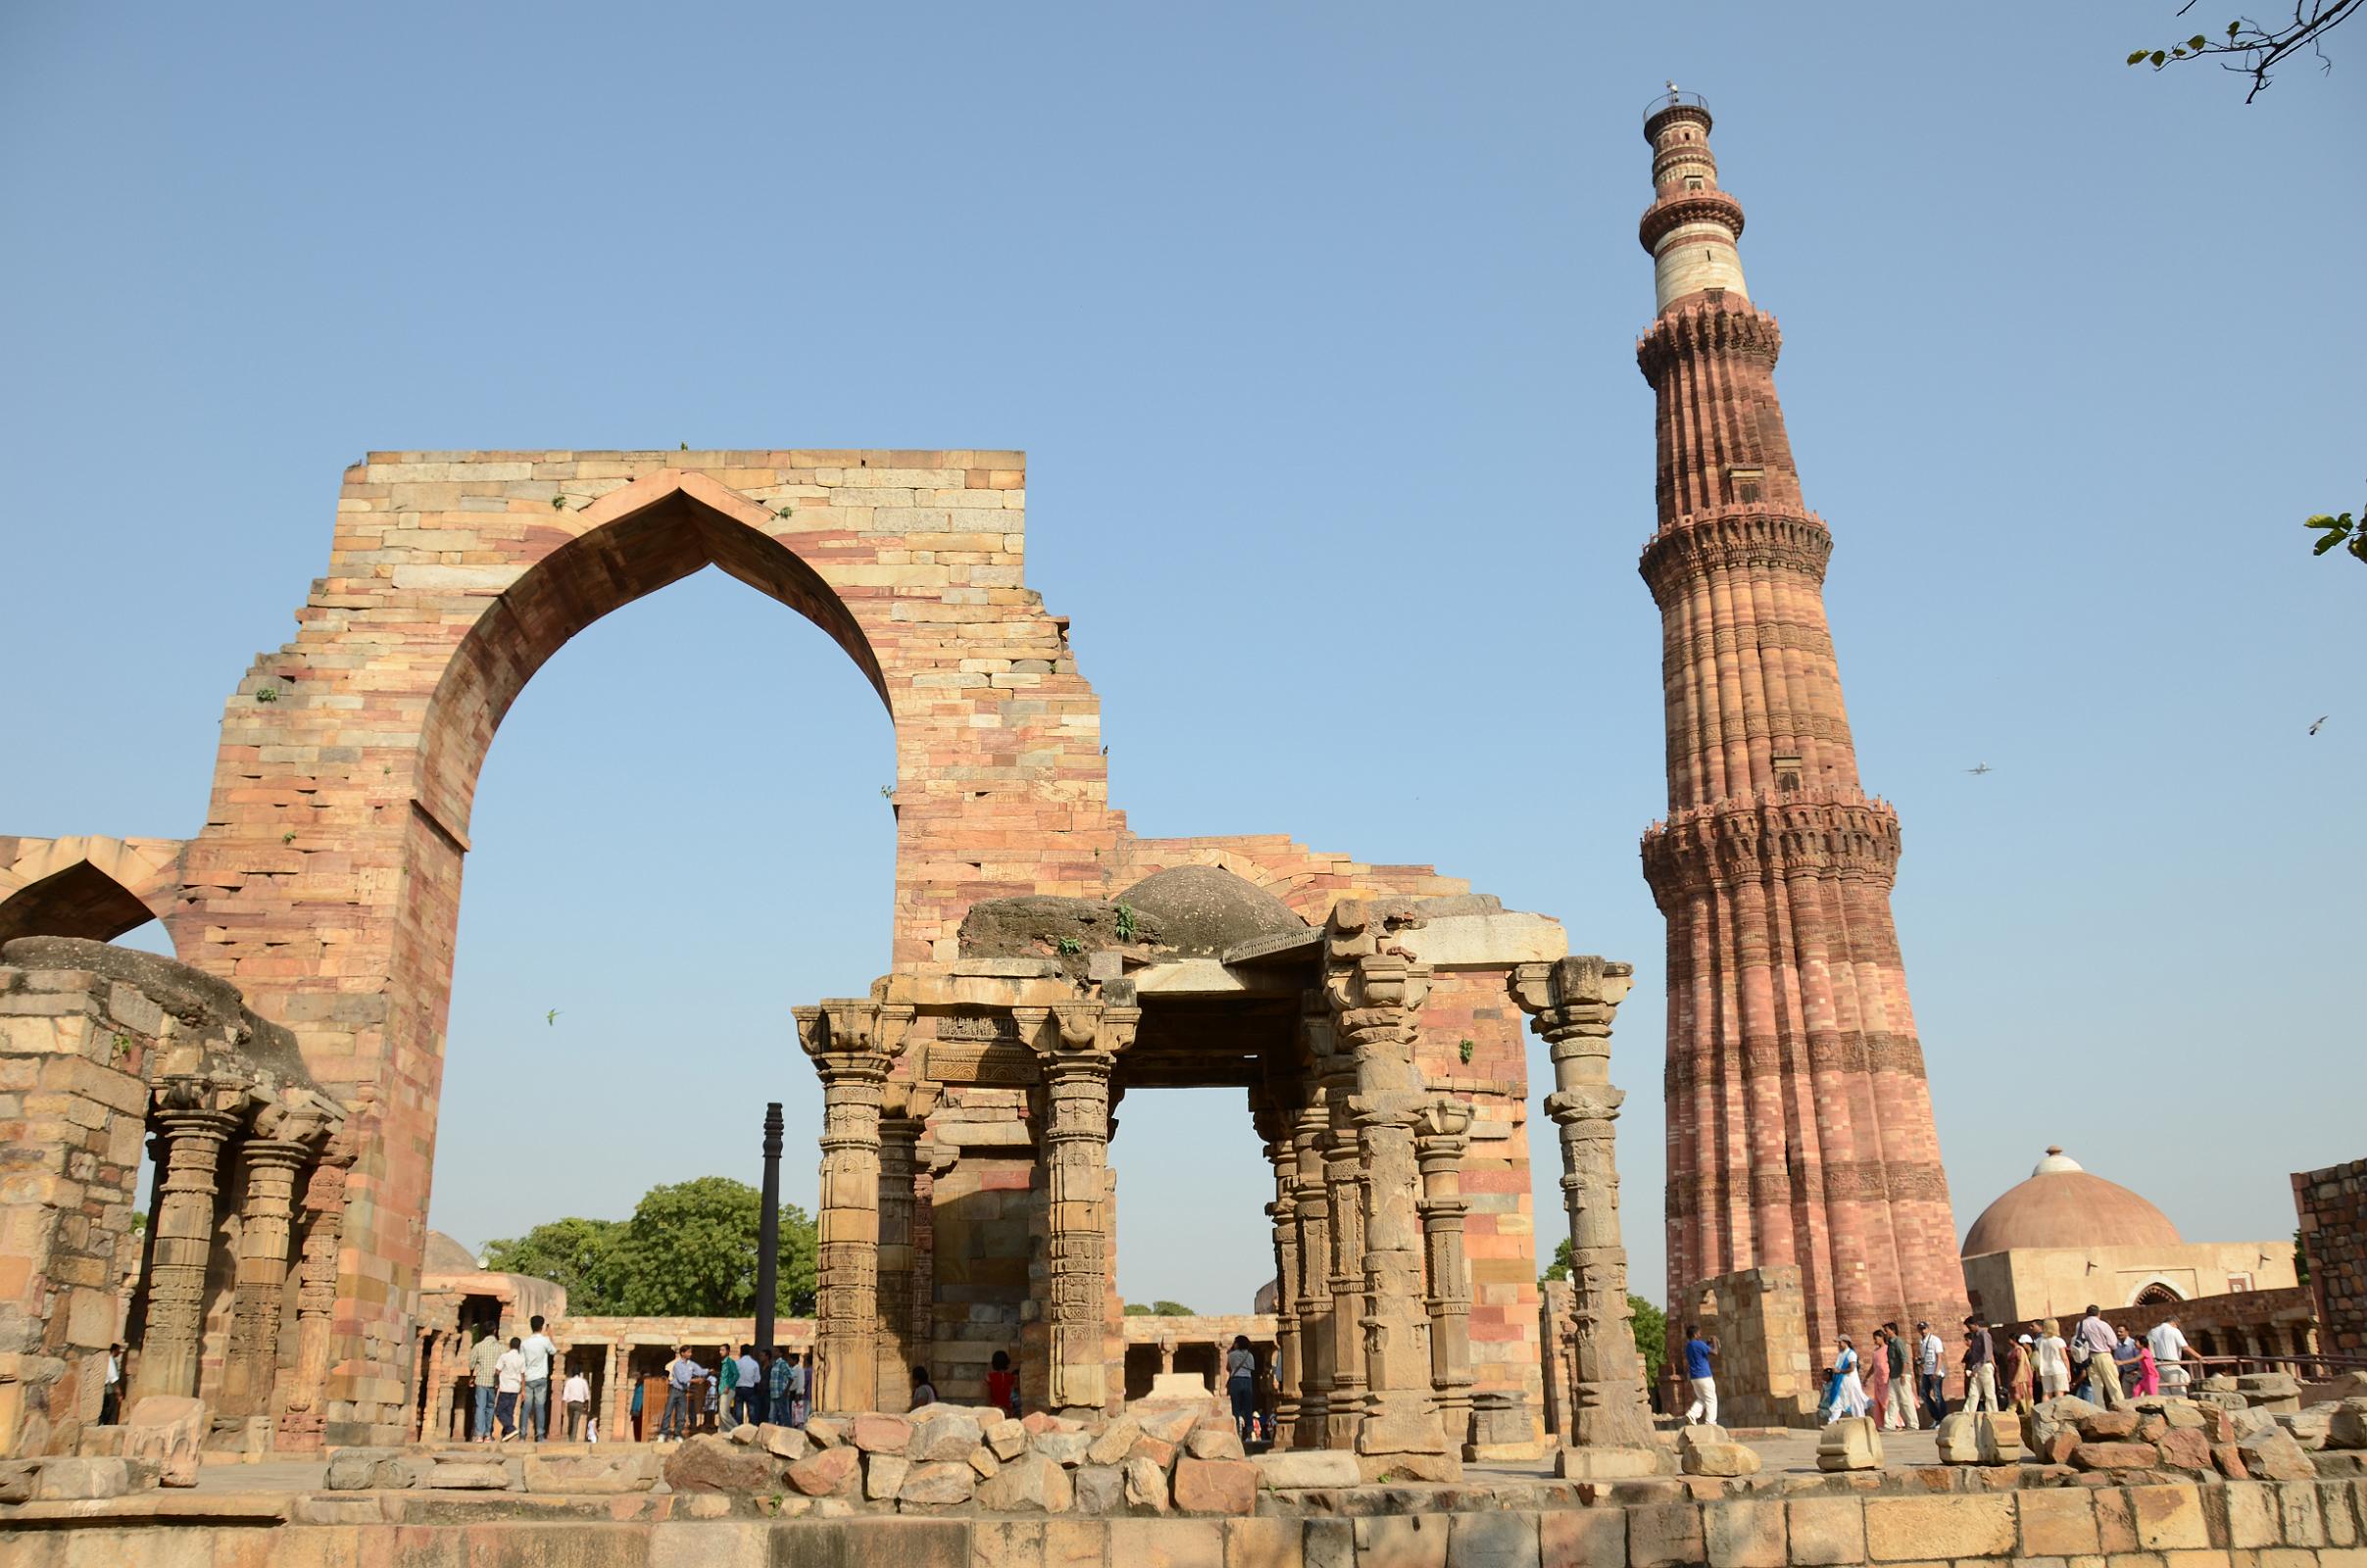 qutub minar tapete,bogen,alte geschichte,die architektur,triumphbogen,archäologische fundstätte